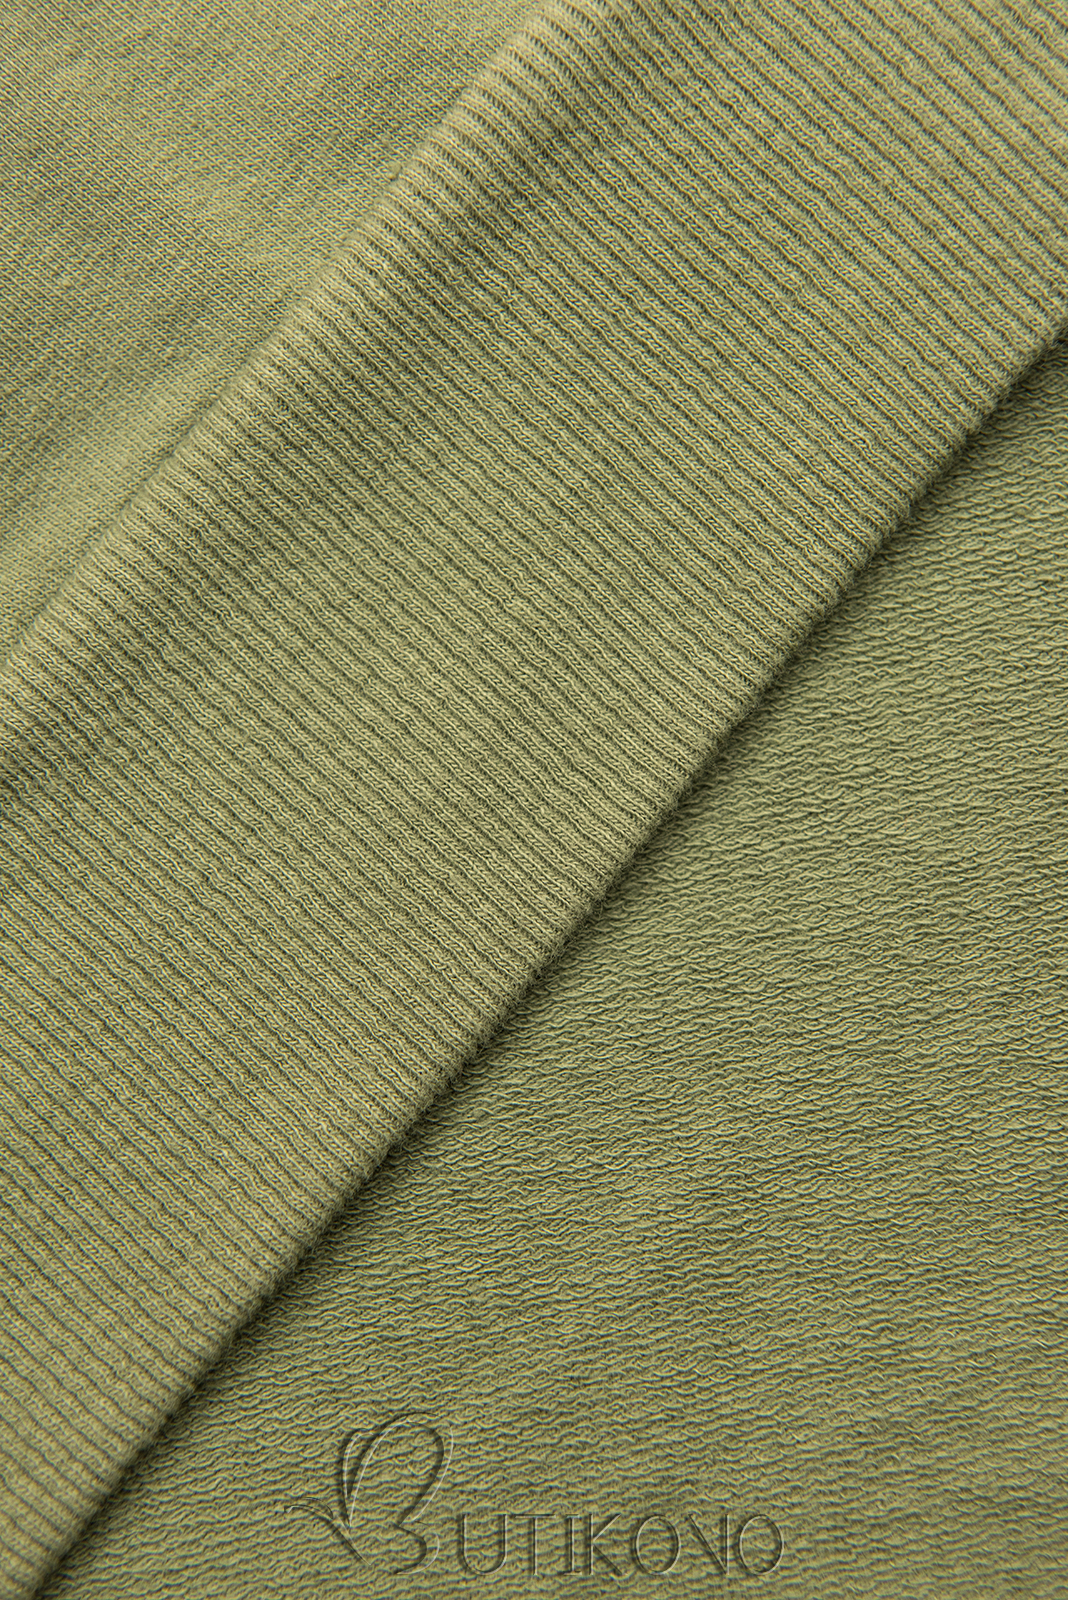 Zelené ležérne teplákové šaty